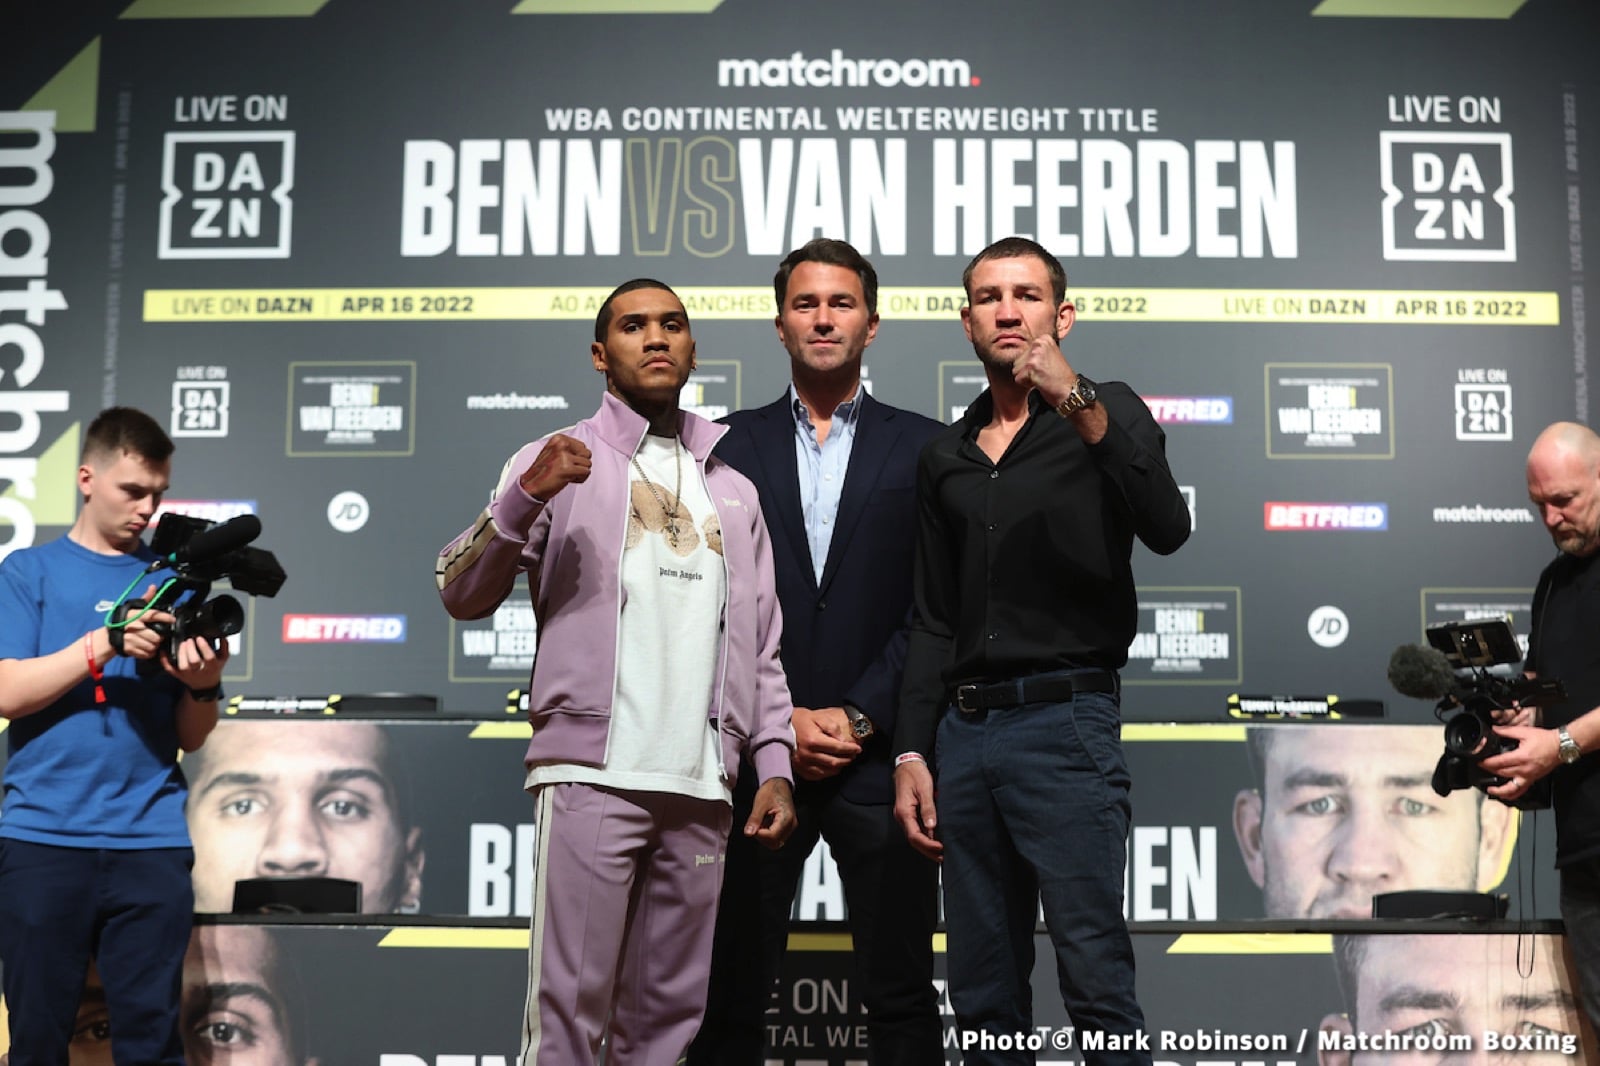 Chris Van Heerden, Conor Benn boxing image / photo